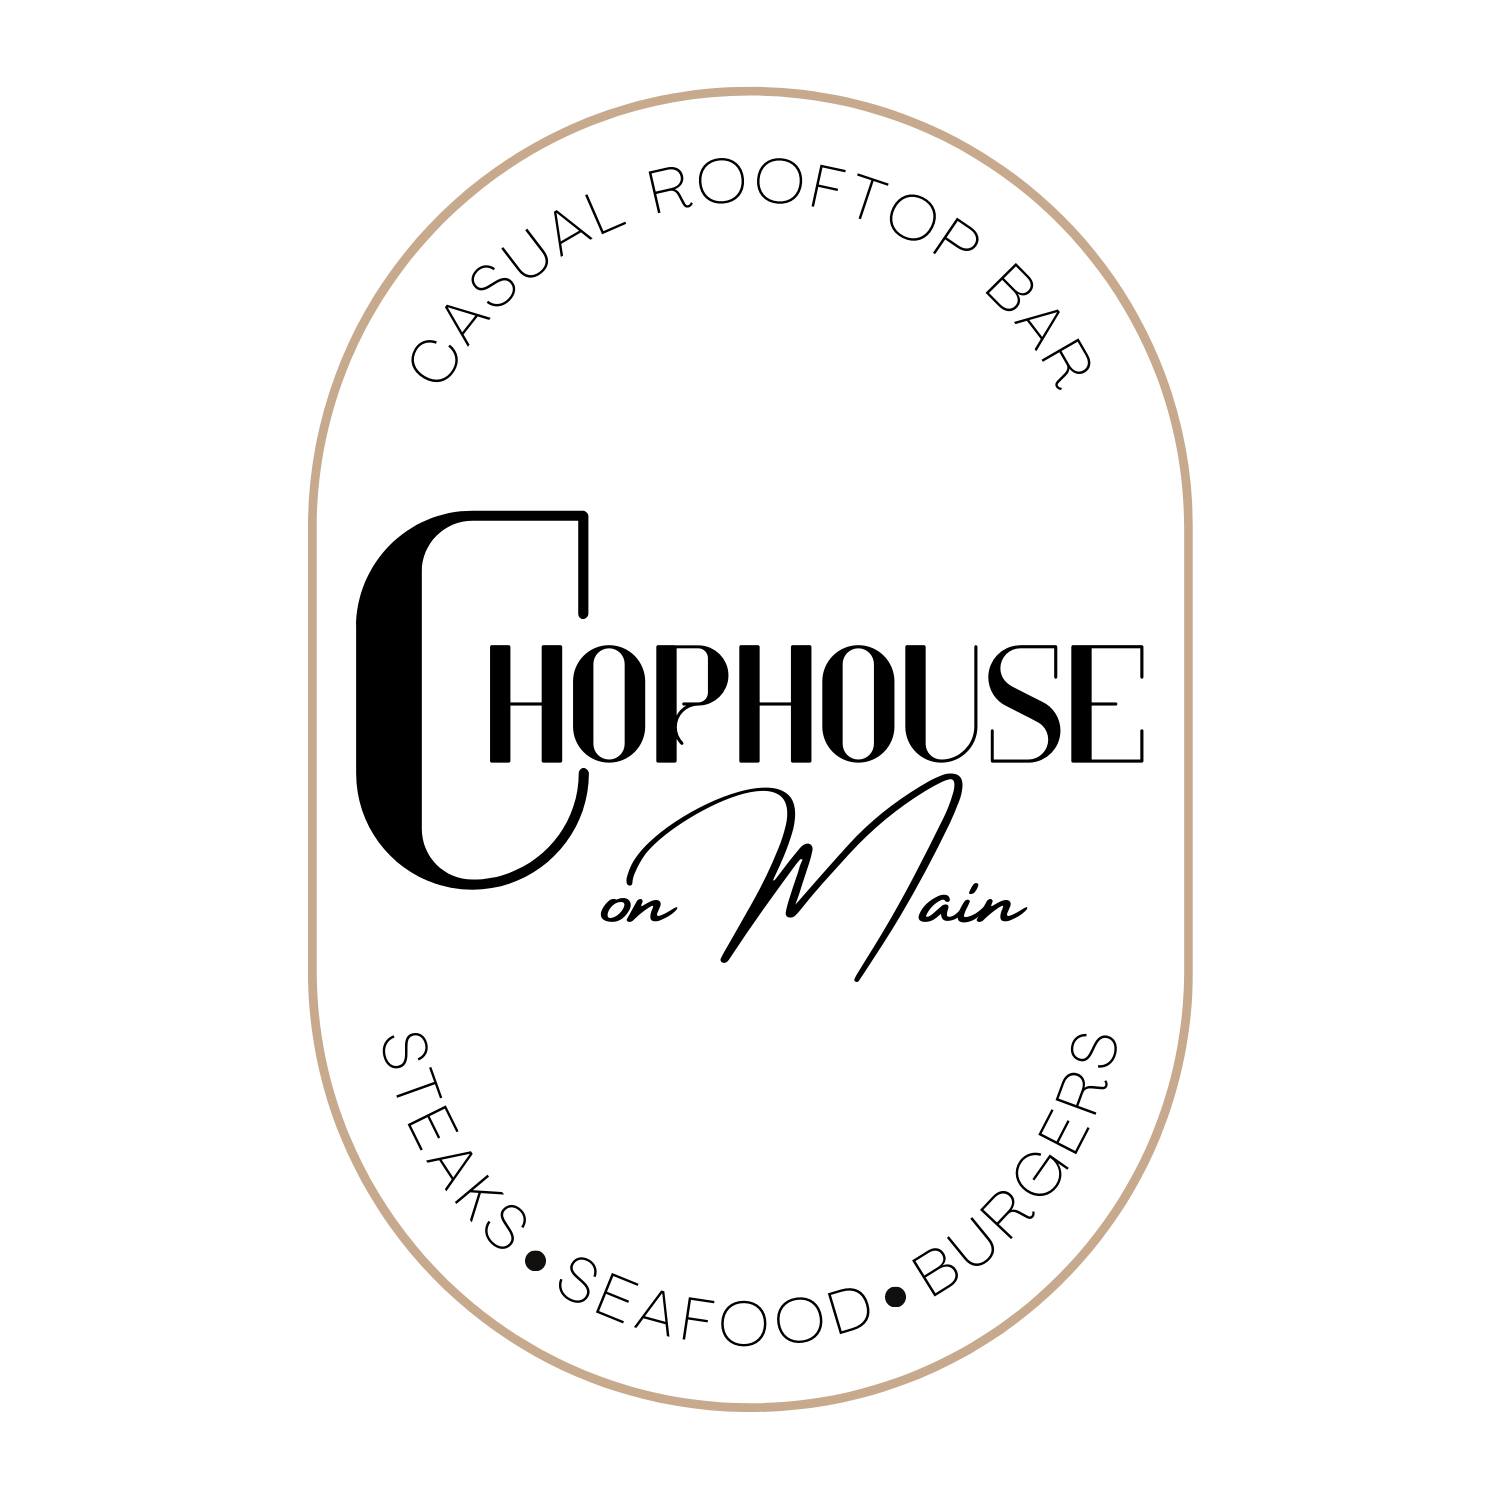 Chophouse on Main logo